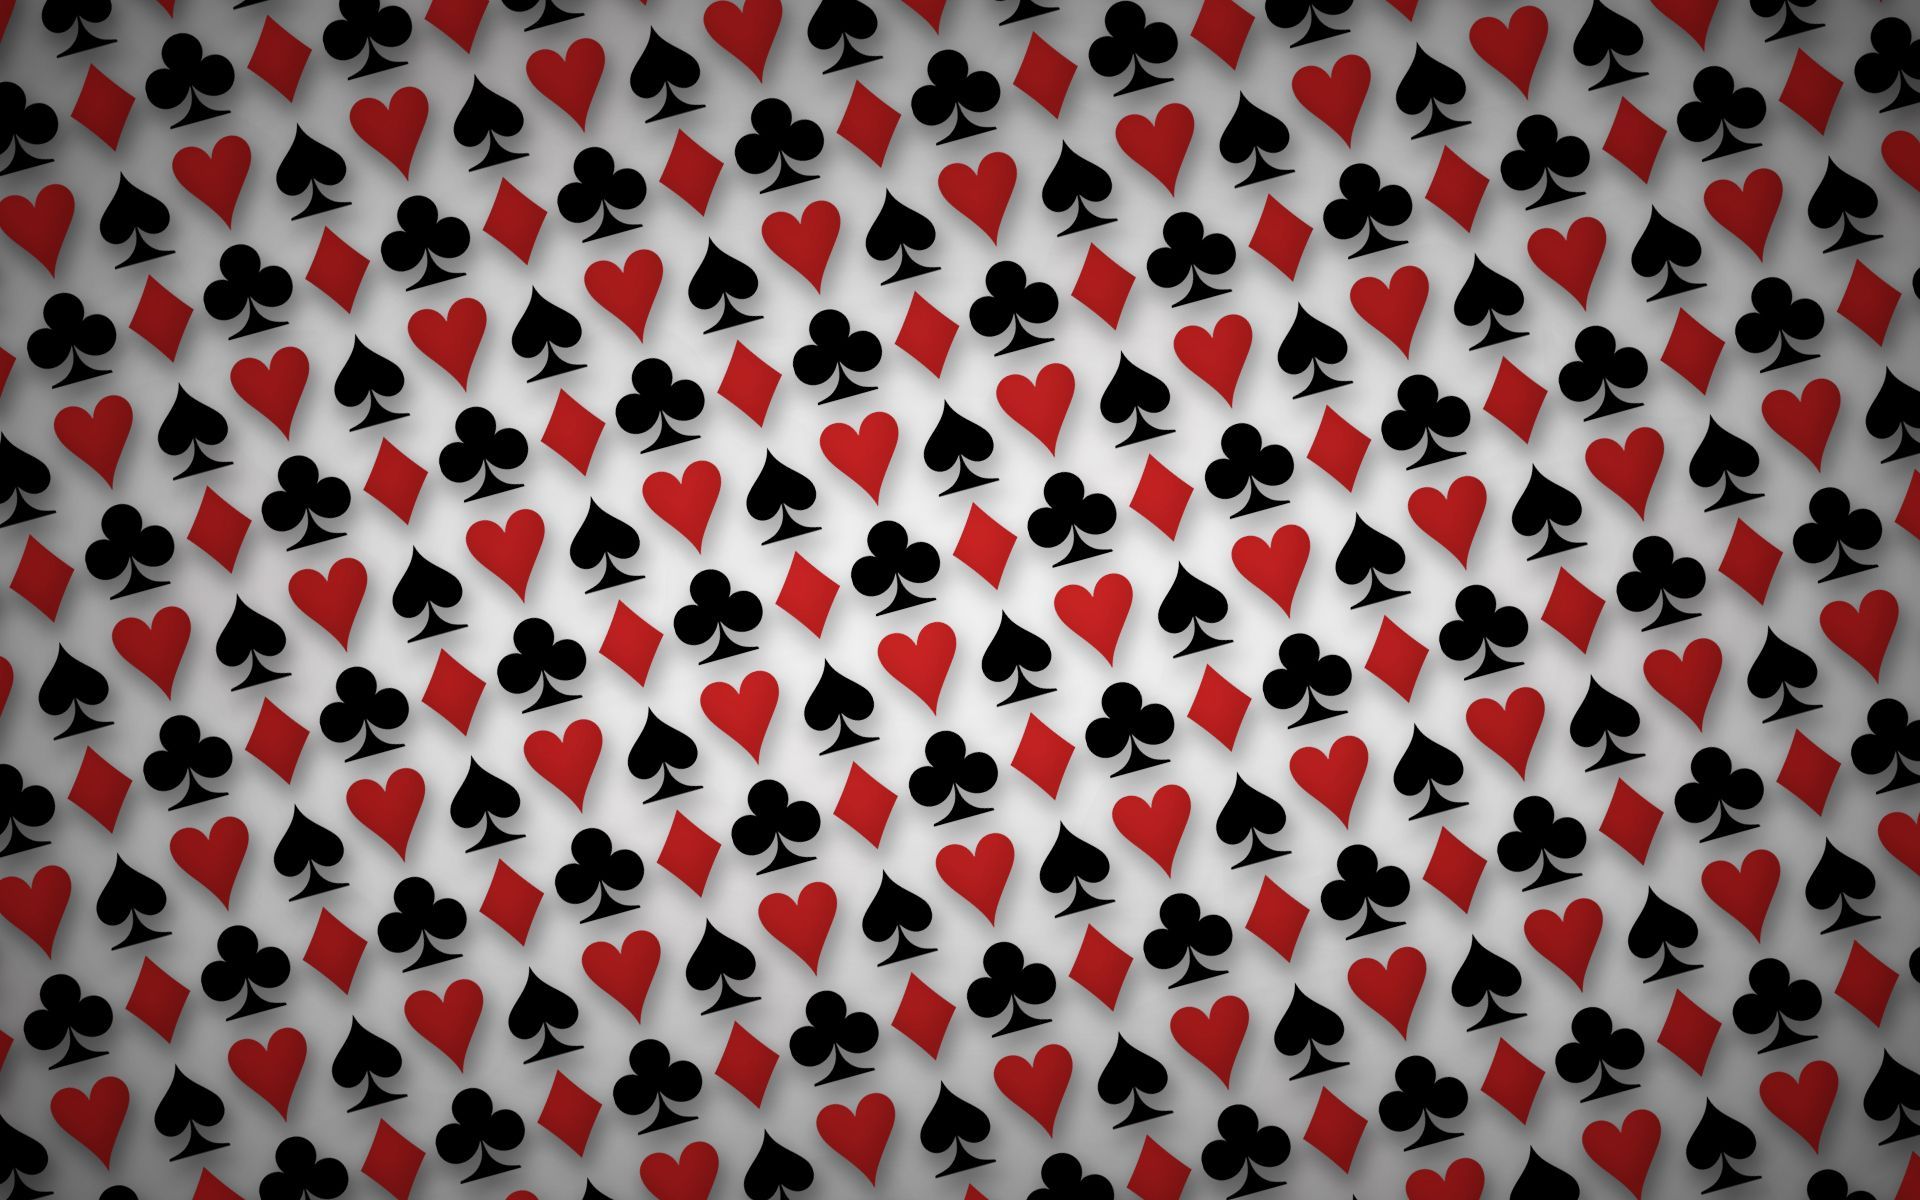 [43+] Playing Cards Wallpaper 1920x1080 on WallpaperSafari